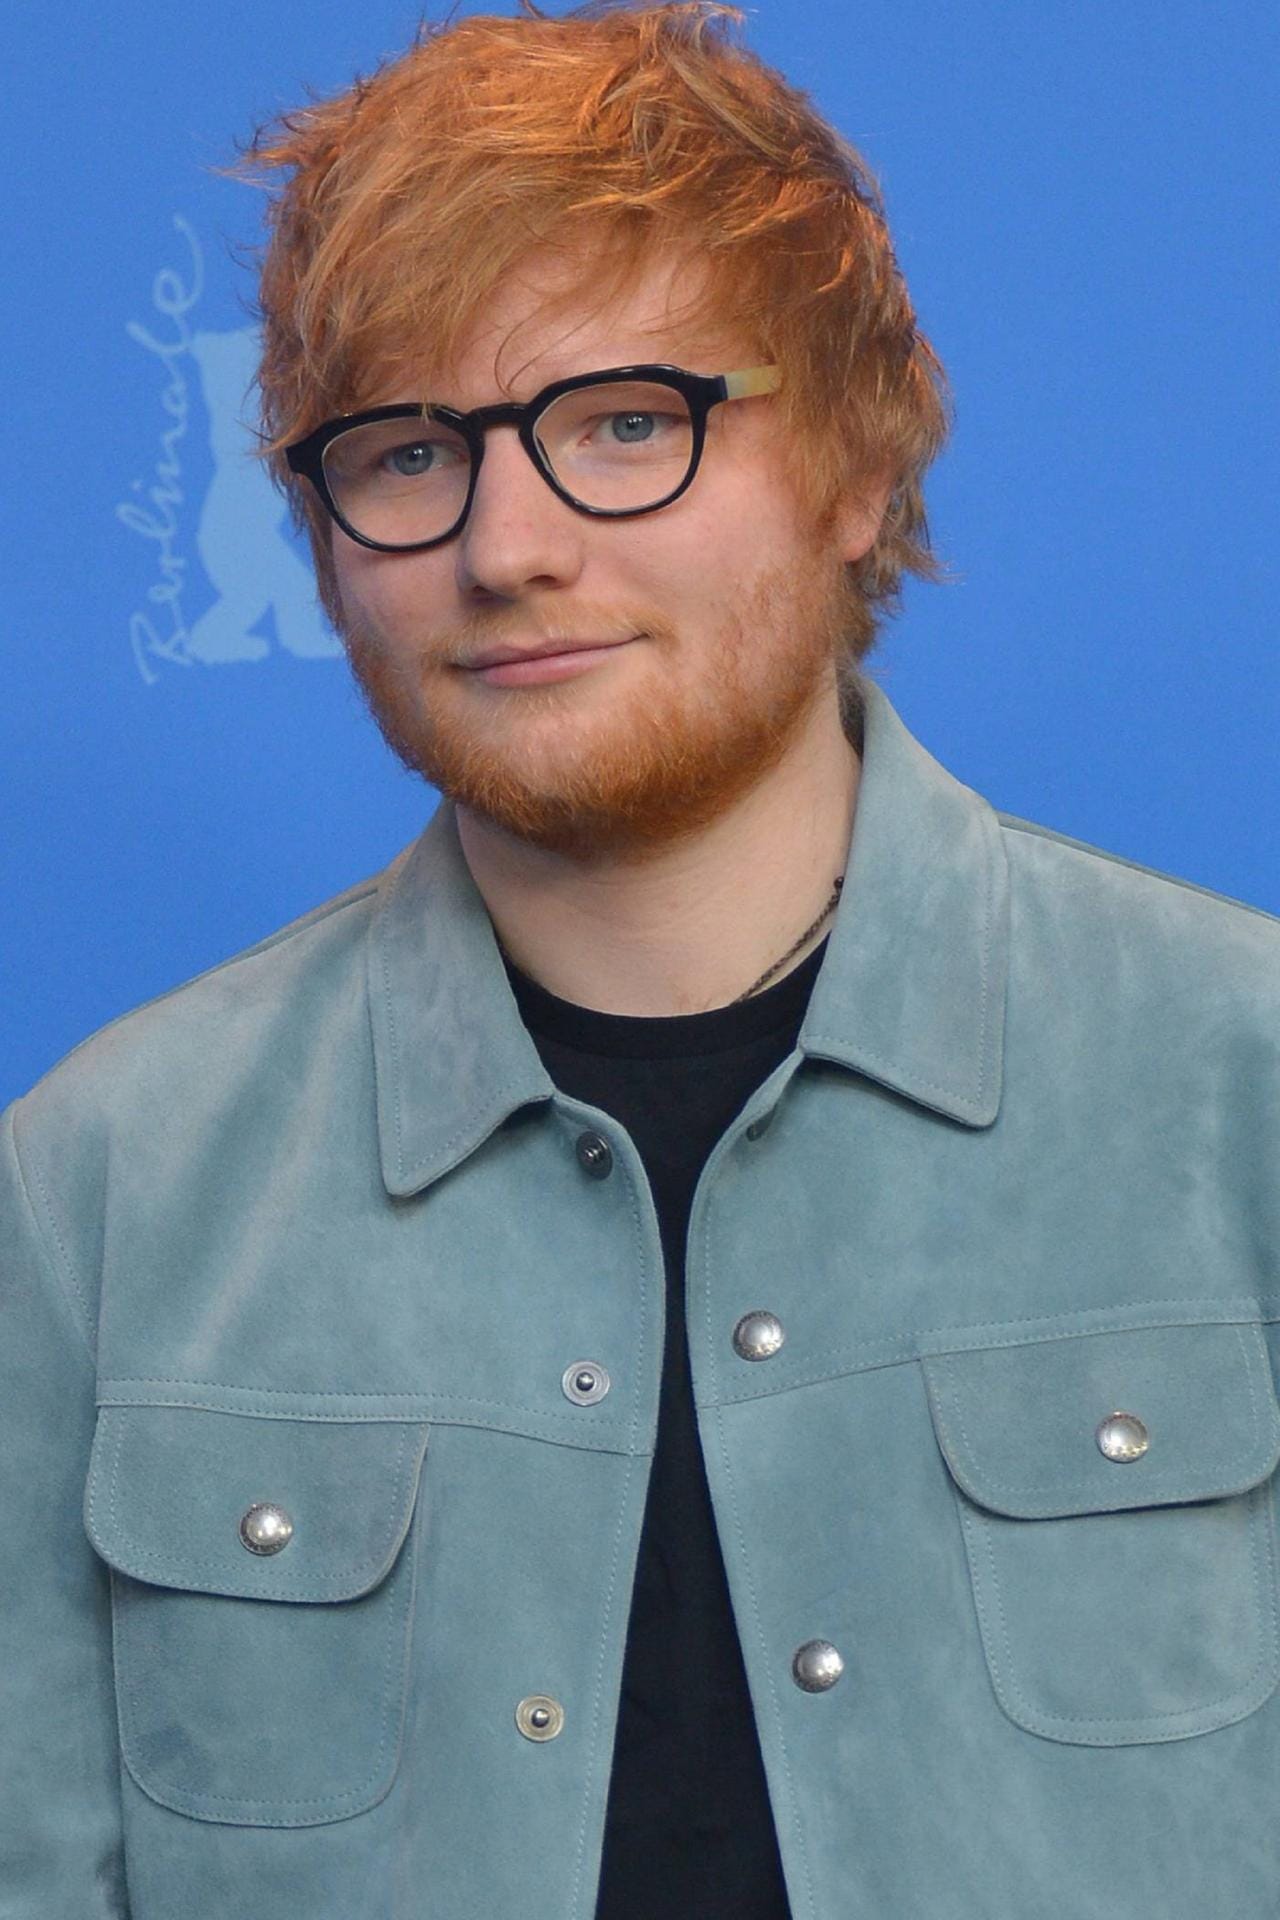 Sänger Ed Sheeran: 17. Februar 1991